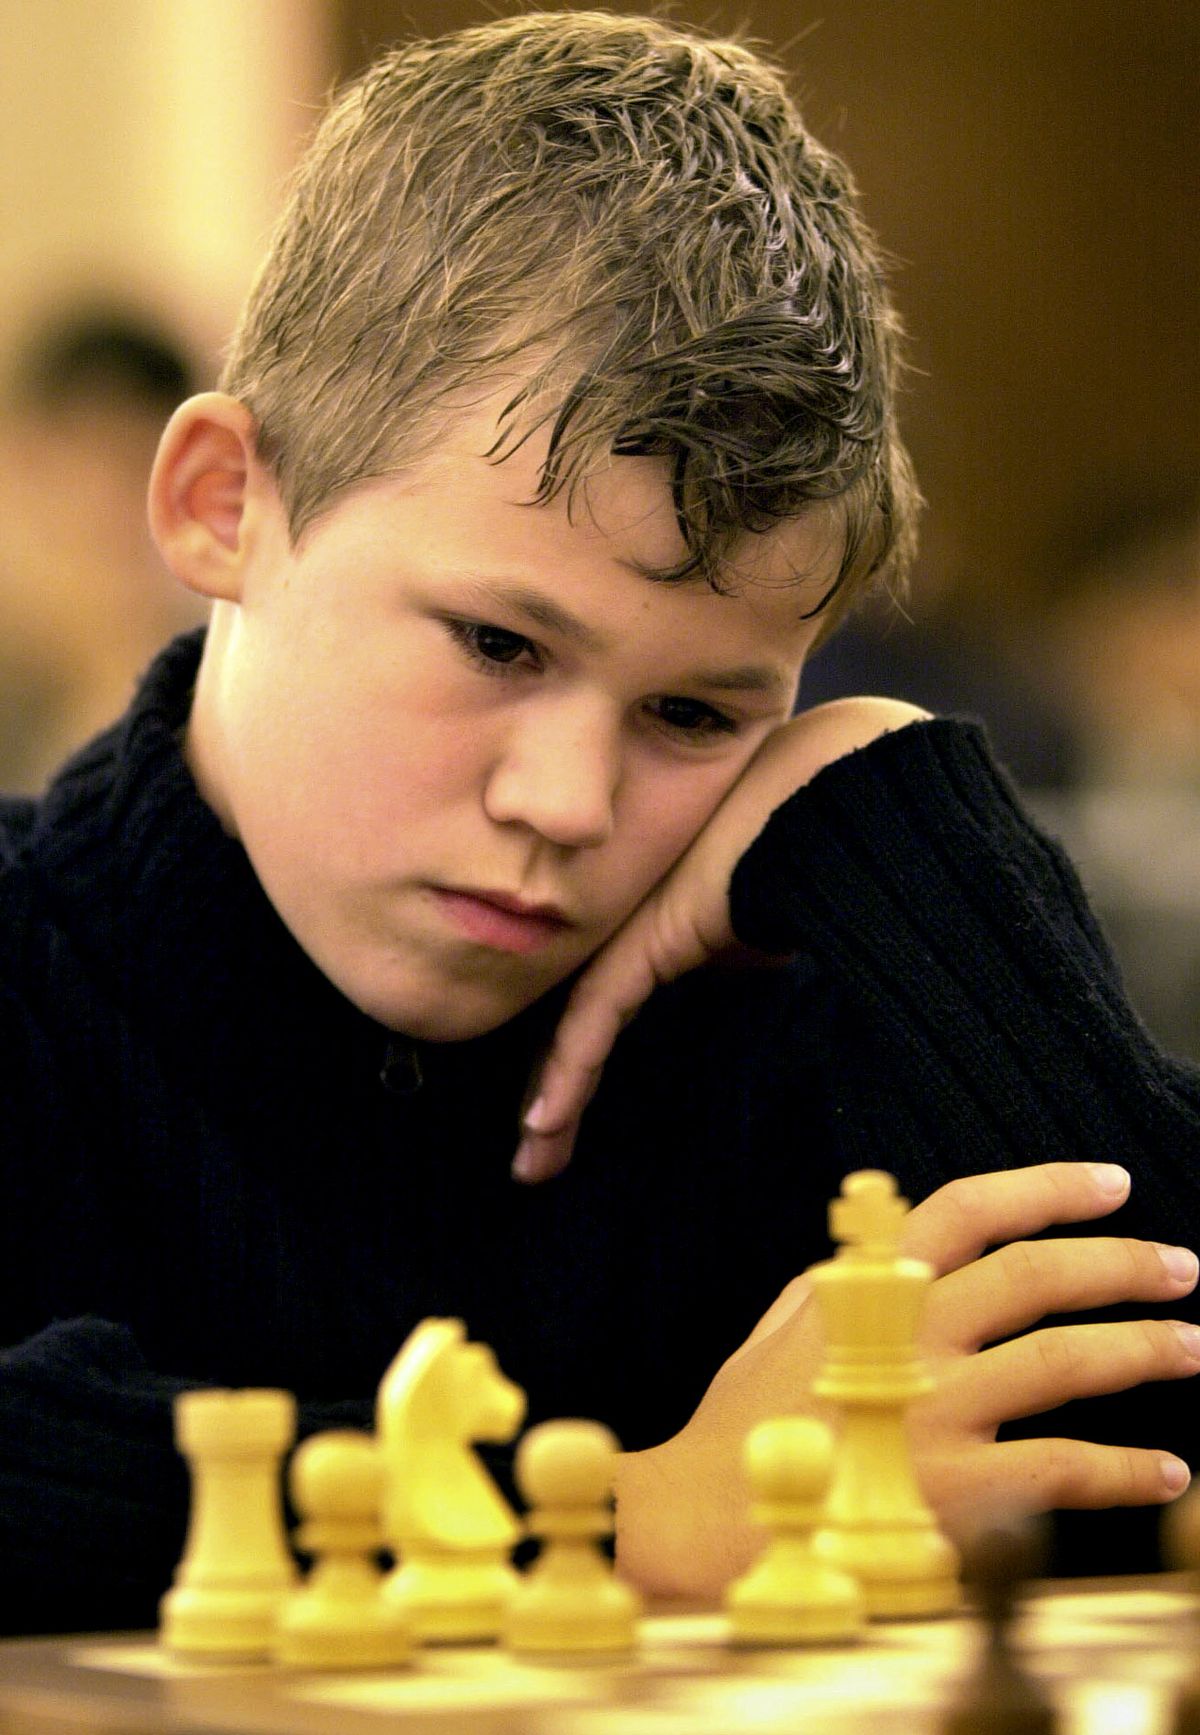 Magnus Carlsen at age 13